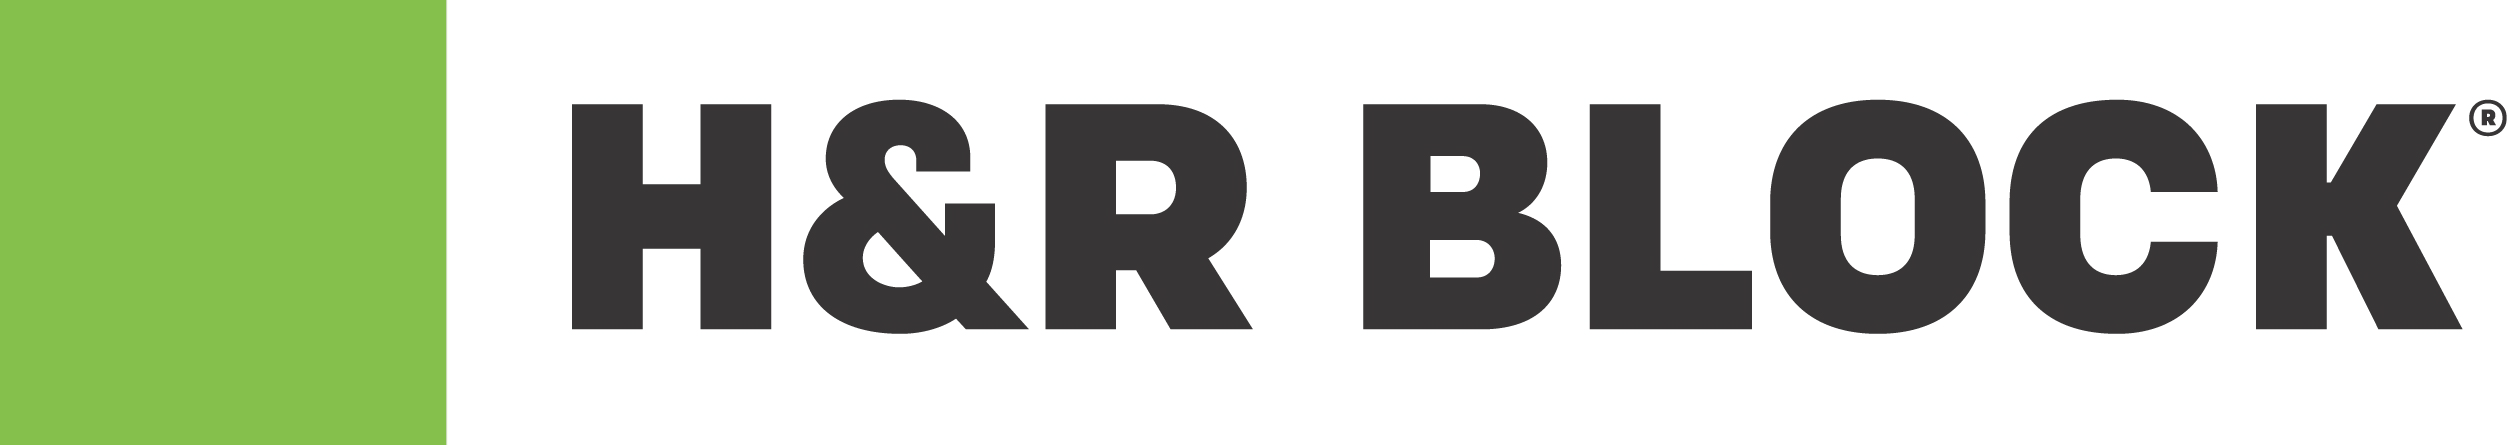 H&R Block Logo - H&R Block Logo